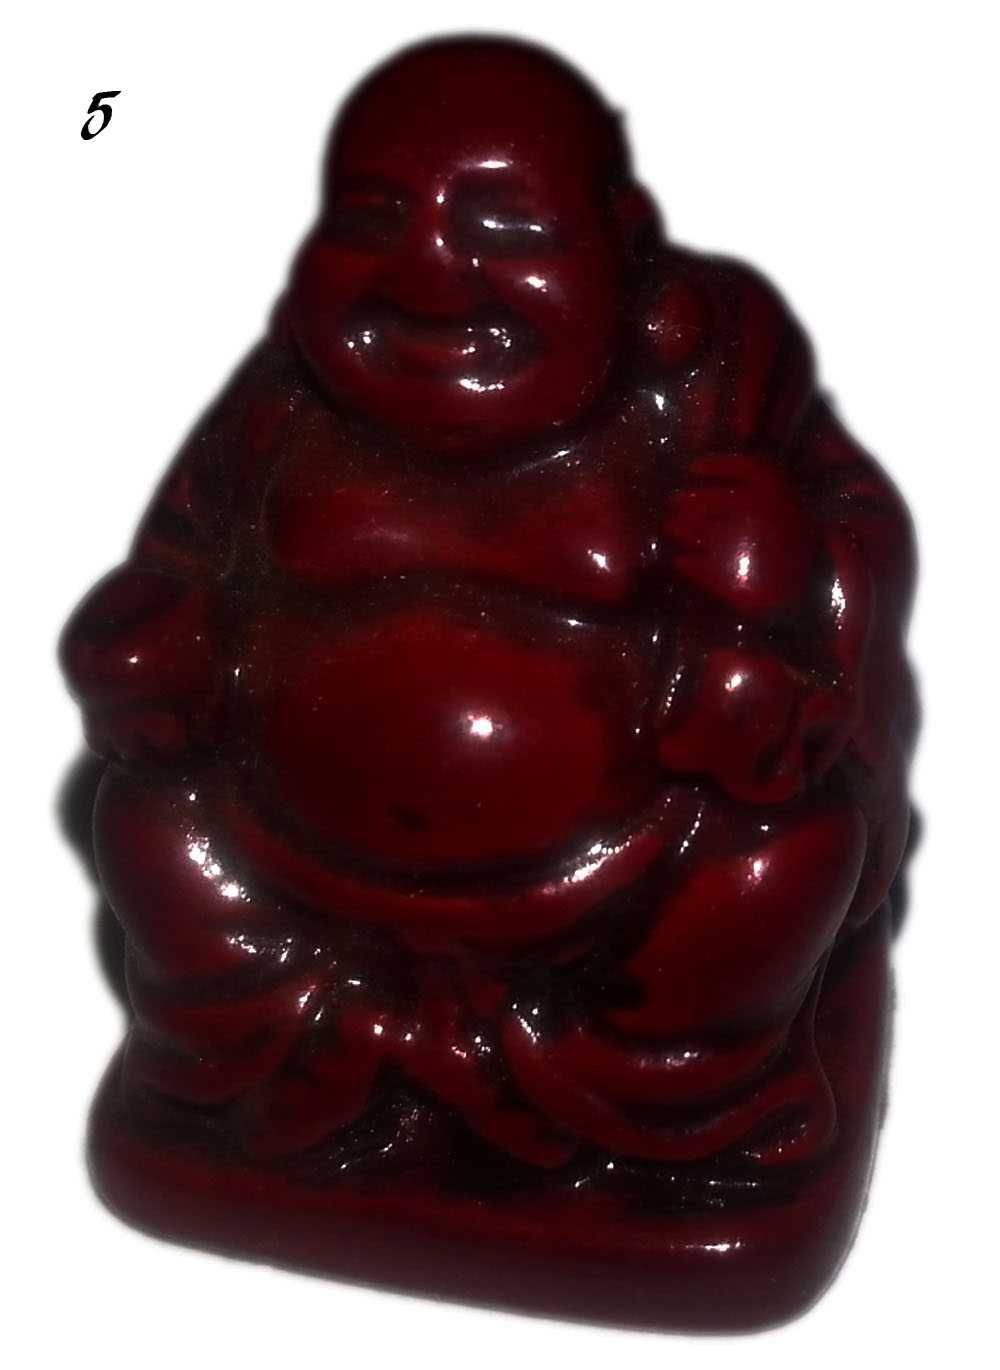 Figurki Budda komplet 6 sztuk